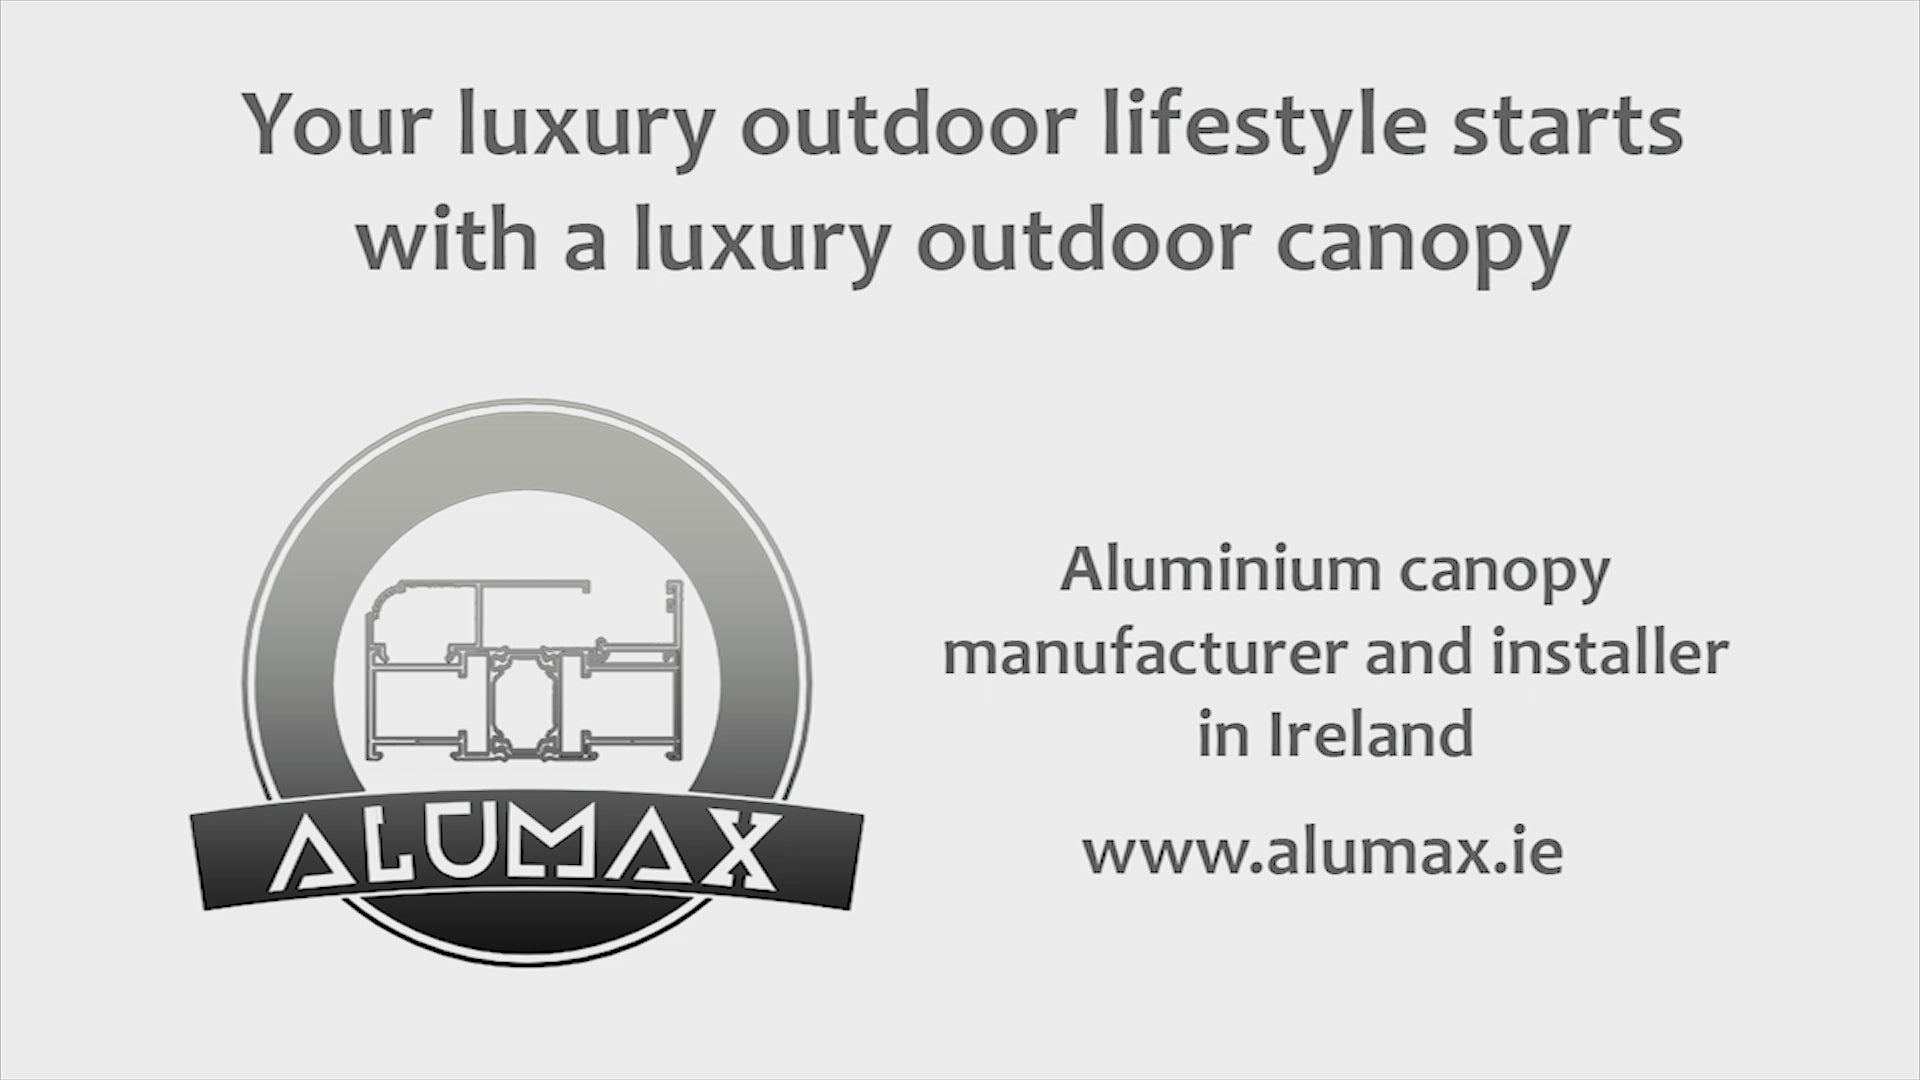 aluminium canopy manufacturer and installer in Ireland